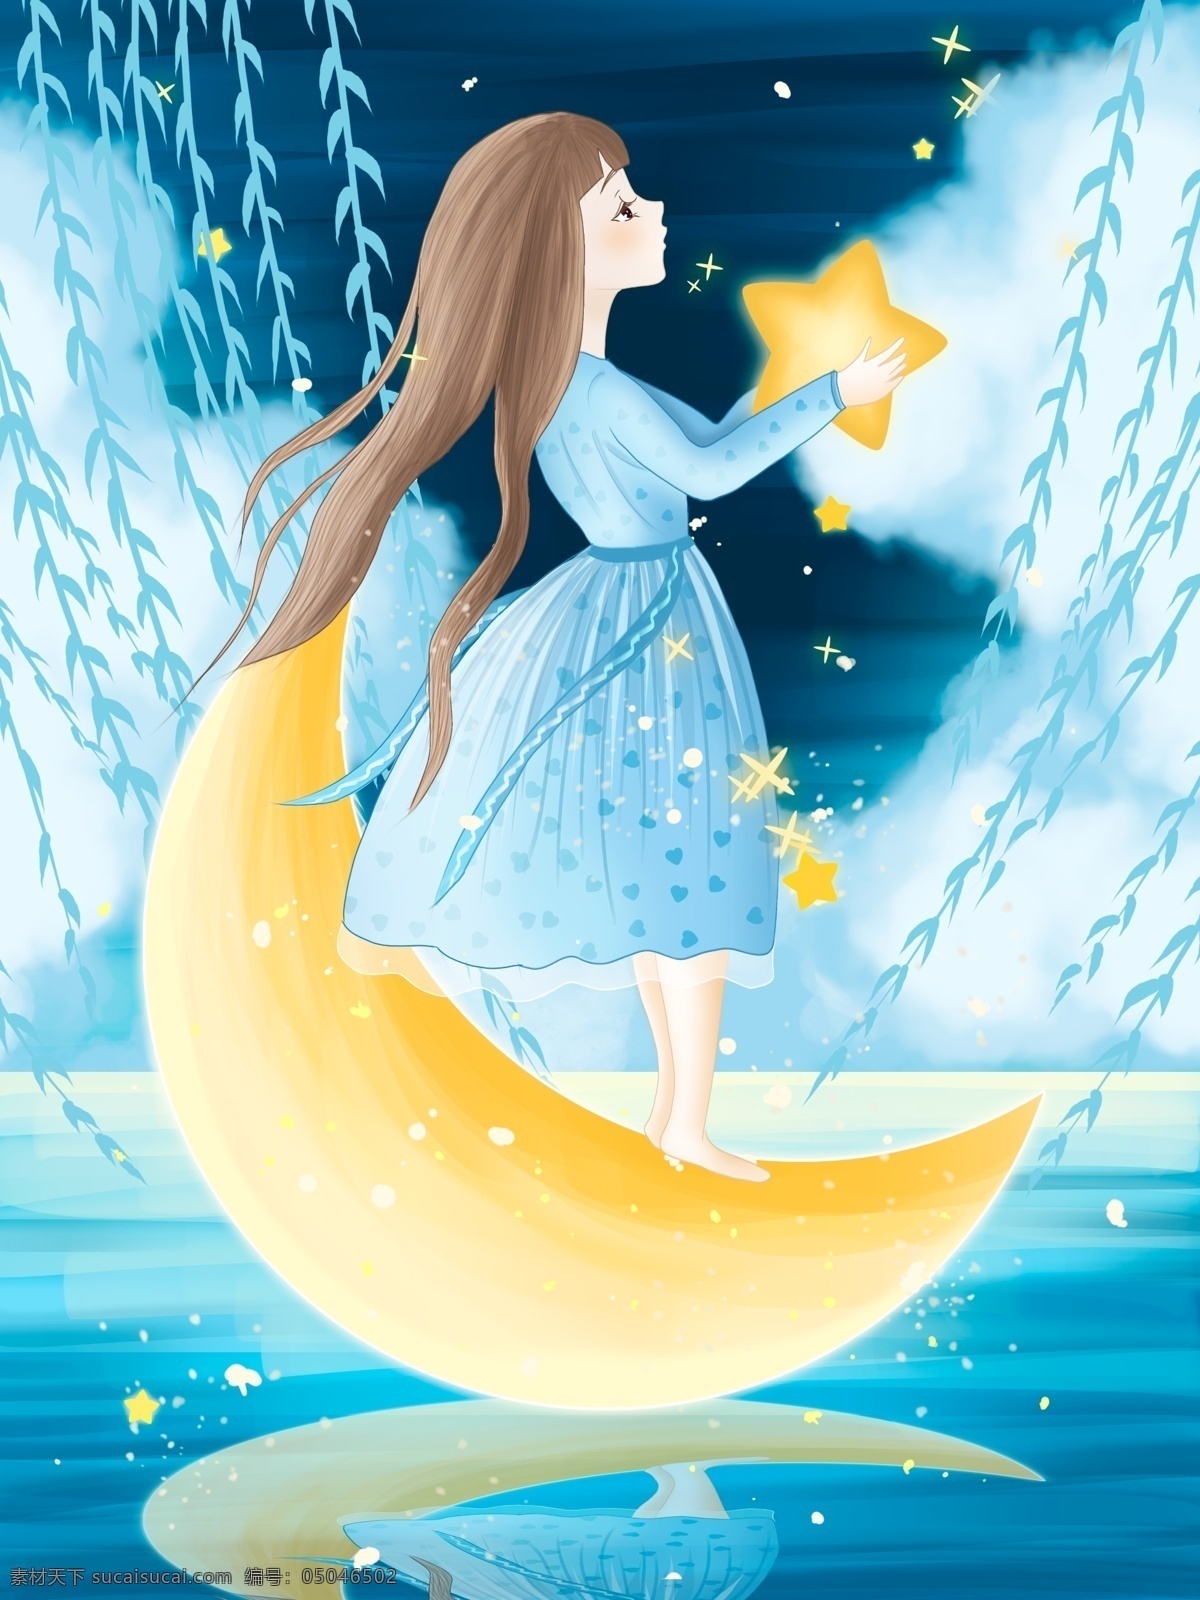 湖面 摘 星星 女孩 晚安 世界 月亮 晚安世界 夜晚 天空 星空 手绘 插画 夜色 月 云 柳树 树叶 水